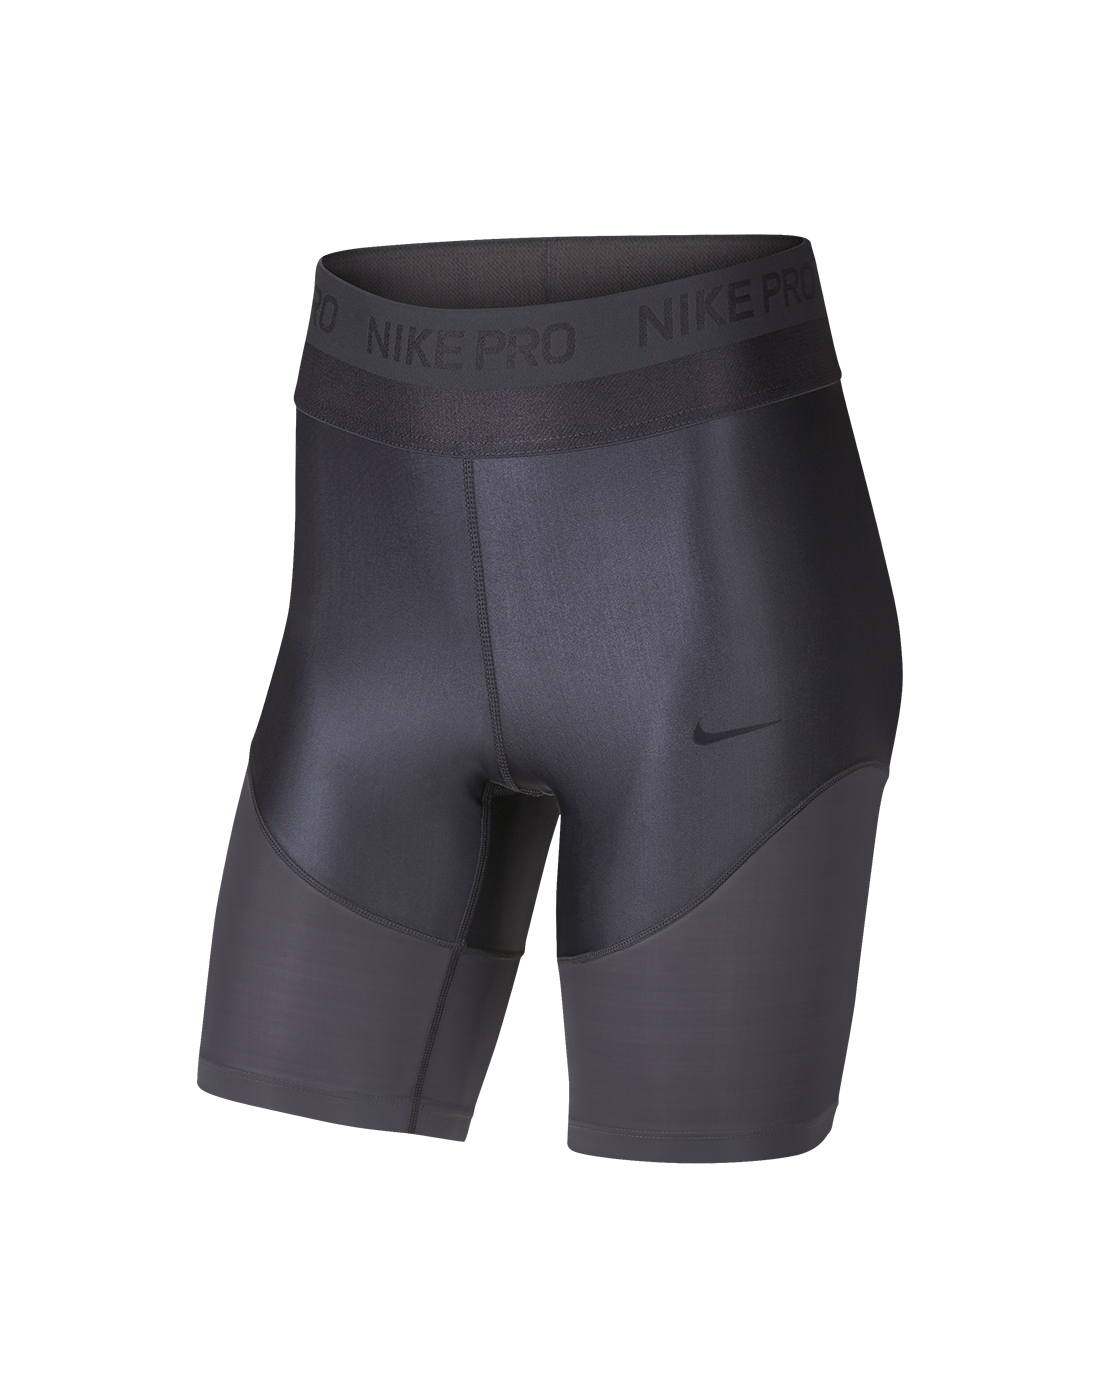 nike pro women's shorts 8 inch